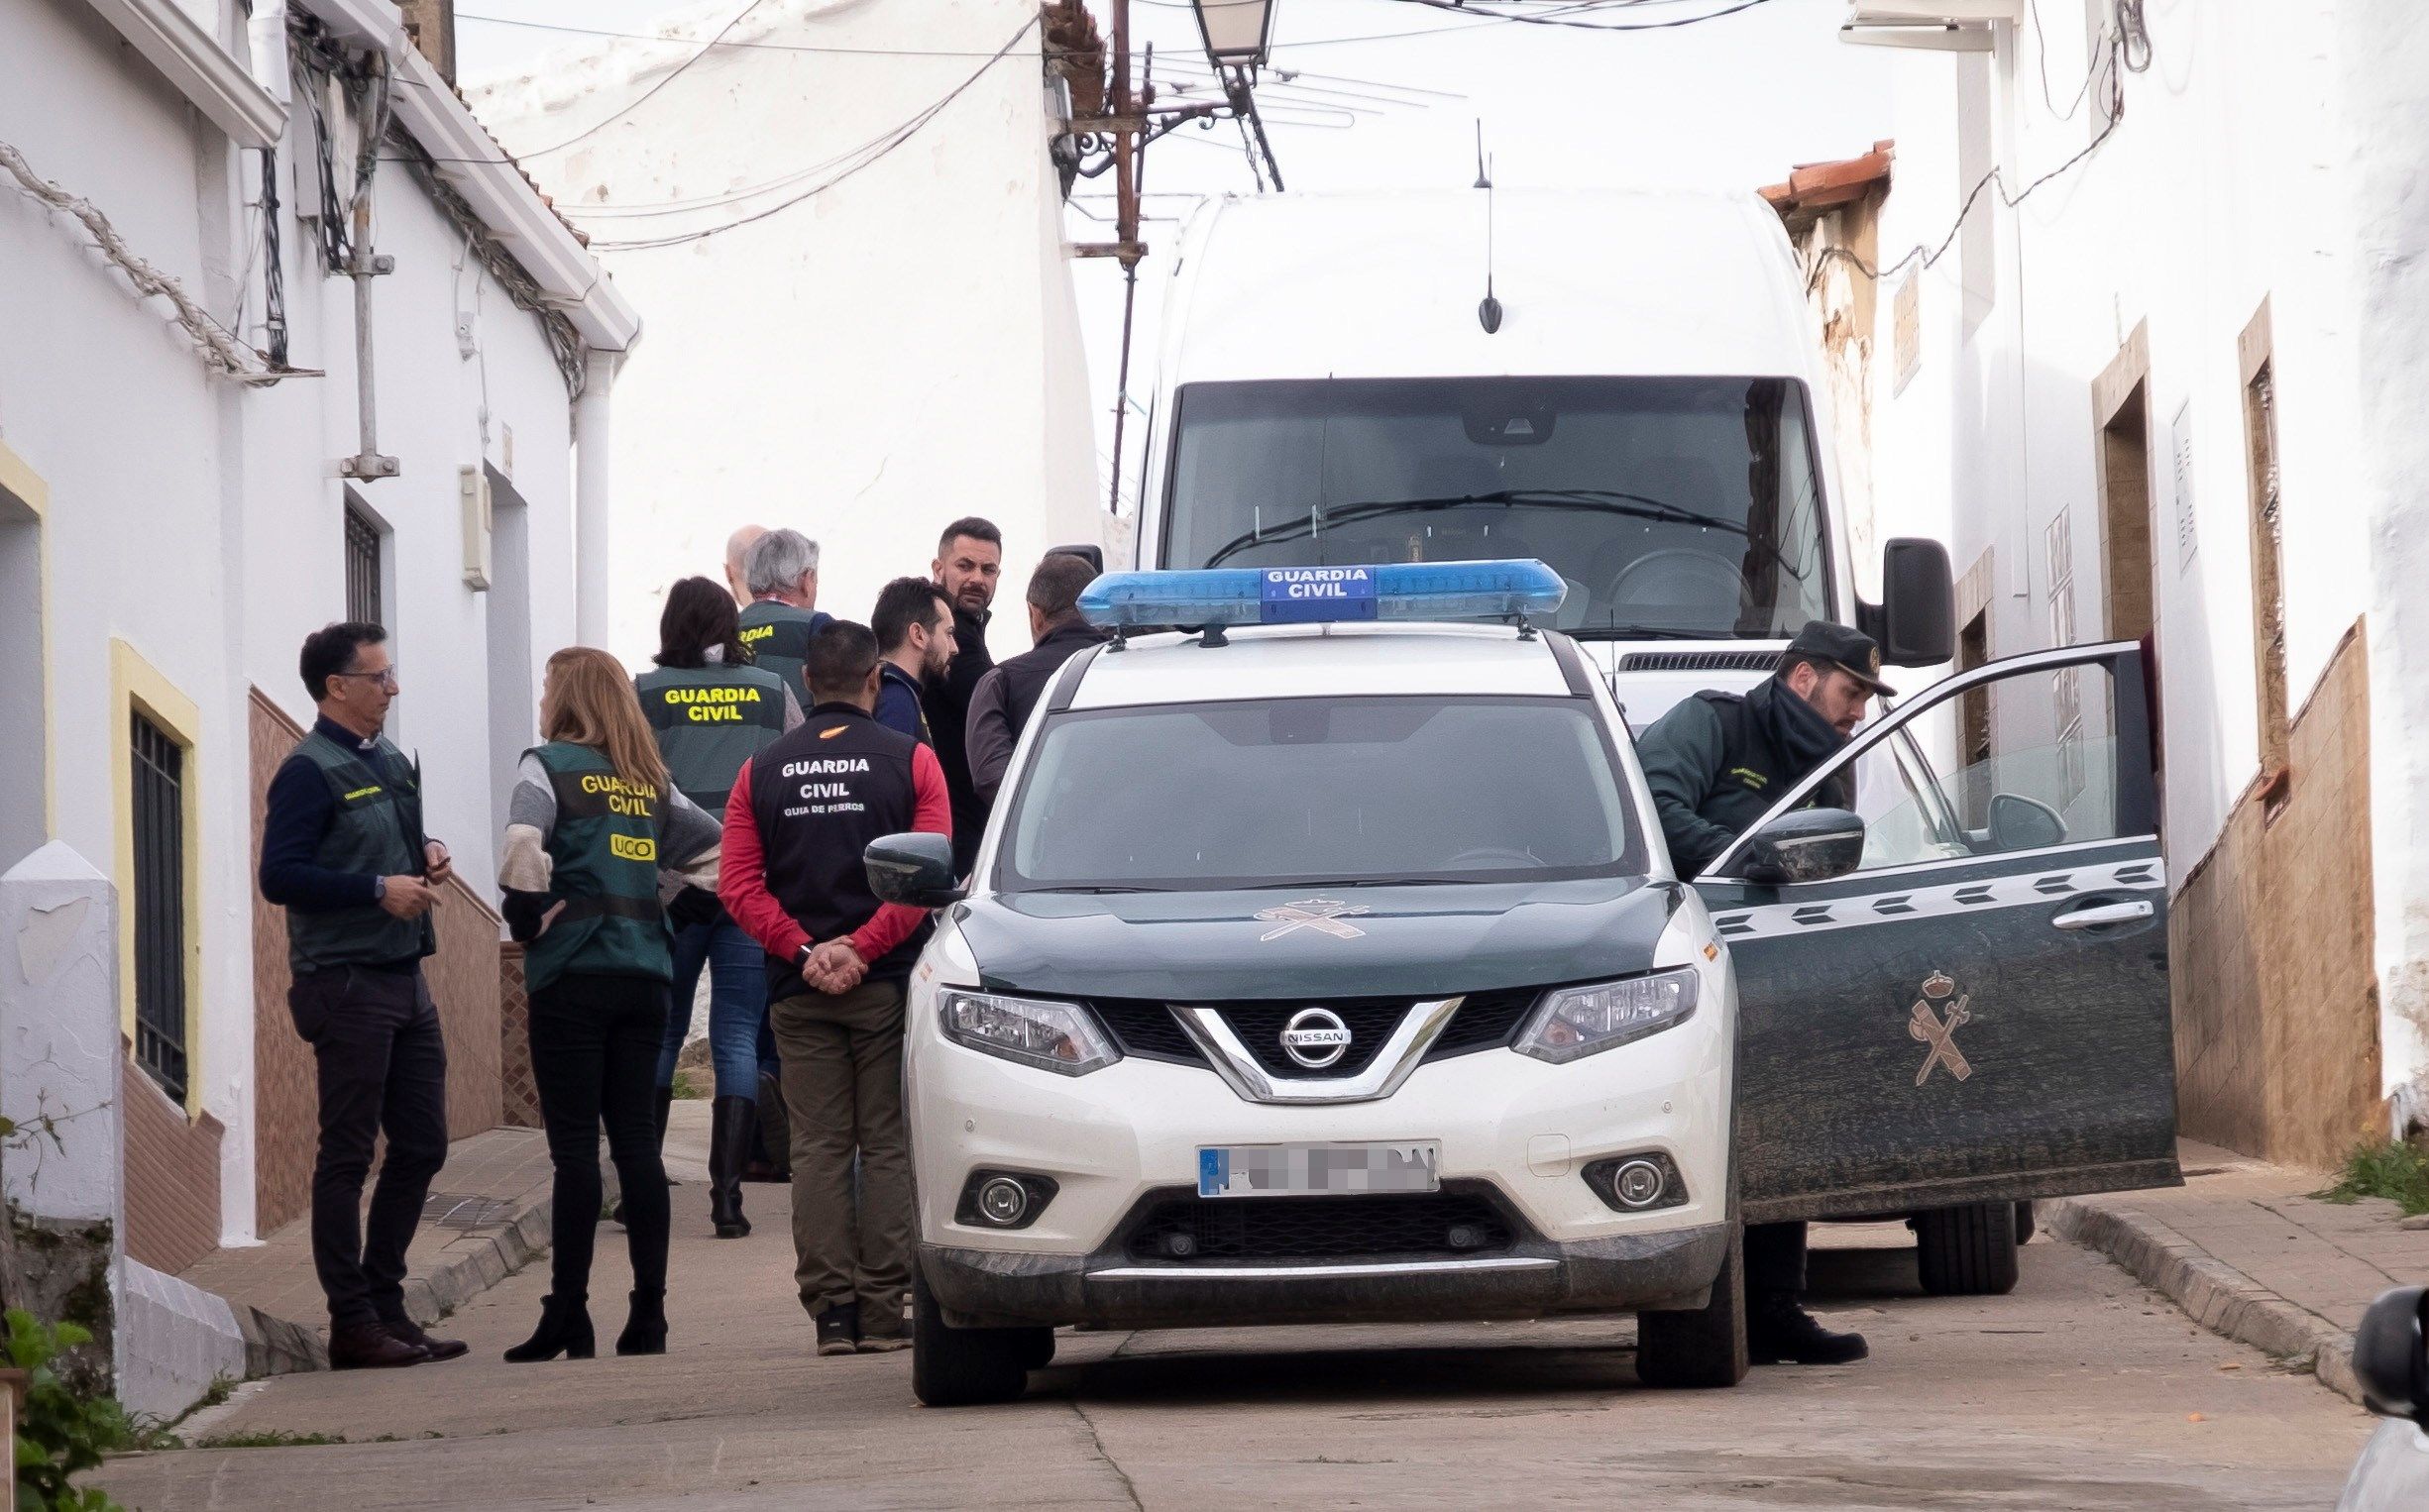 El pasado 12 de diciembre Laura Luelmo, maestra española, desapareció varios días después de mudarse a un pueblo de Huelva (España).